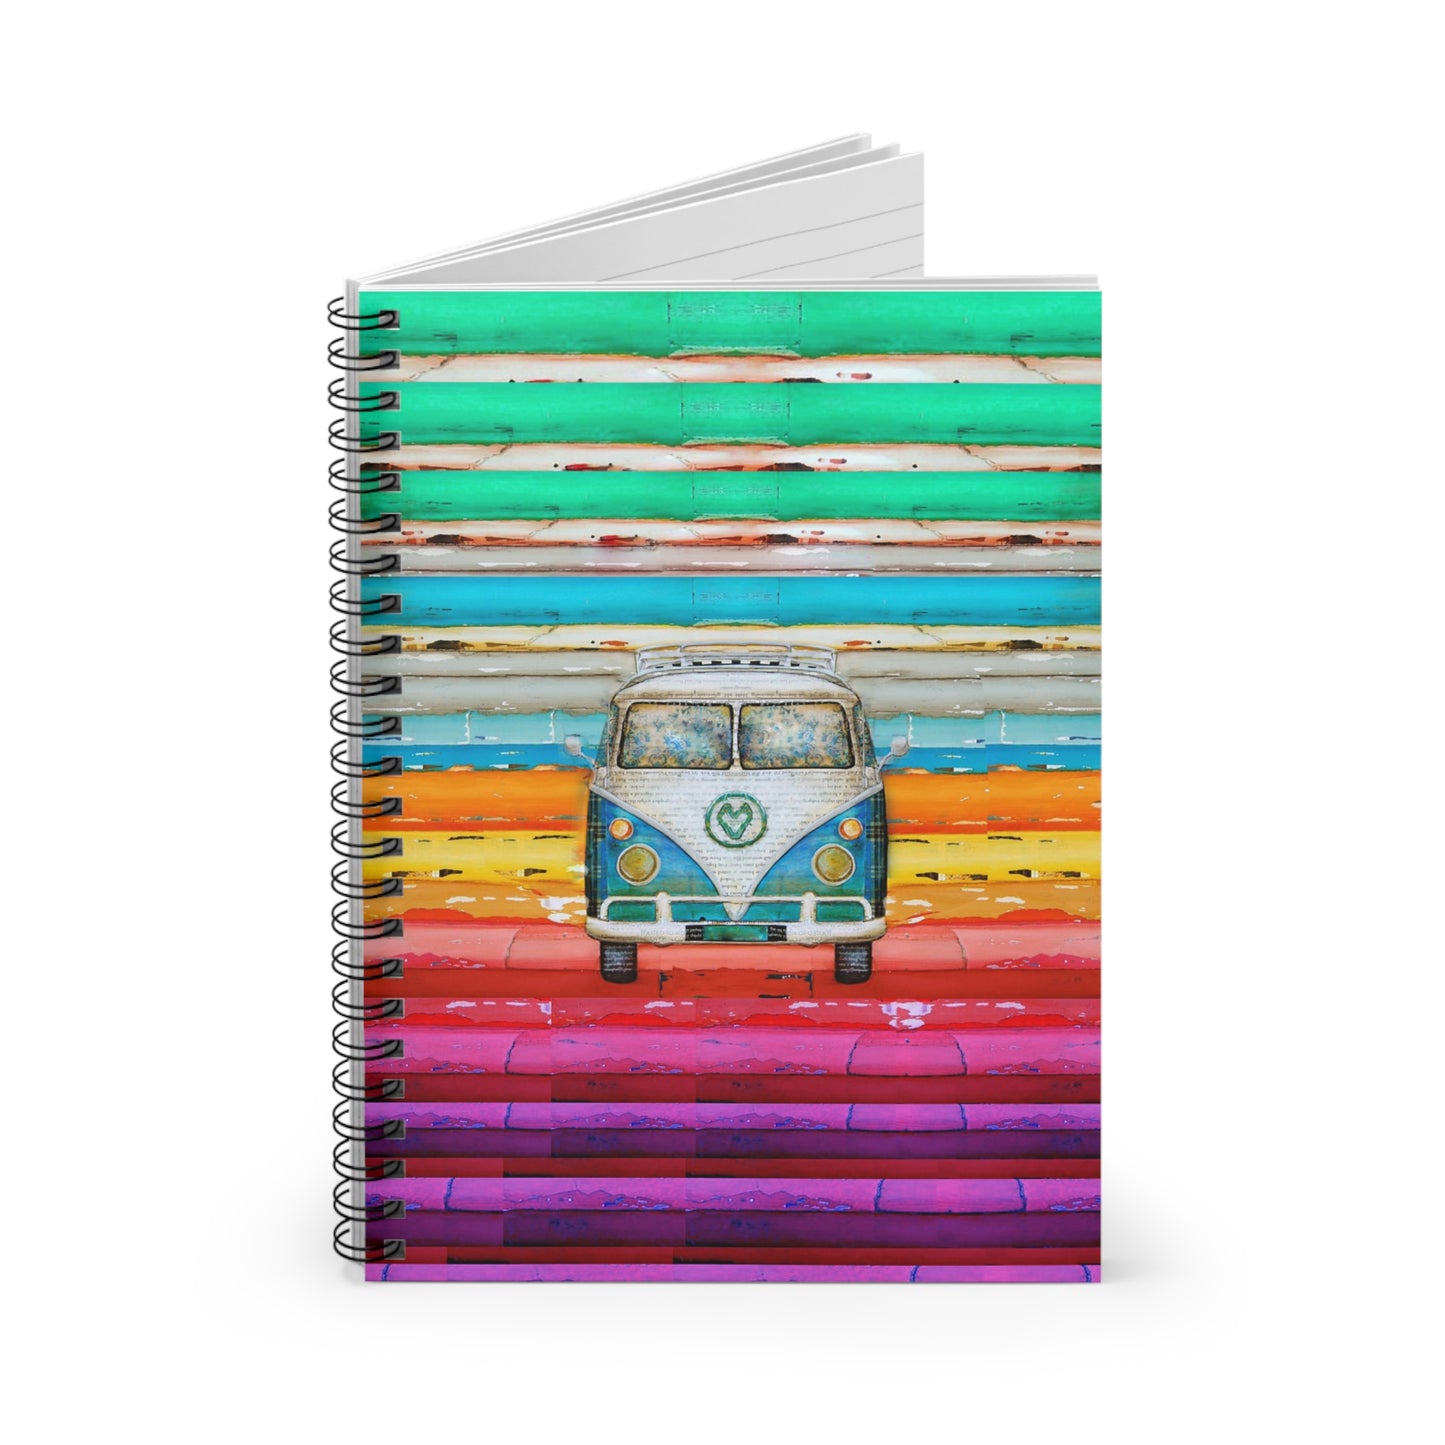 Hippie Van - Spiral Notebook - Ruled Line